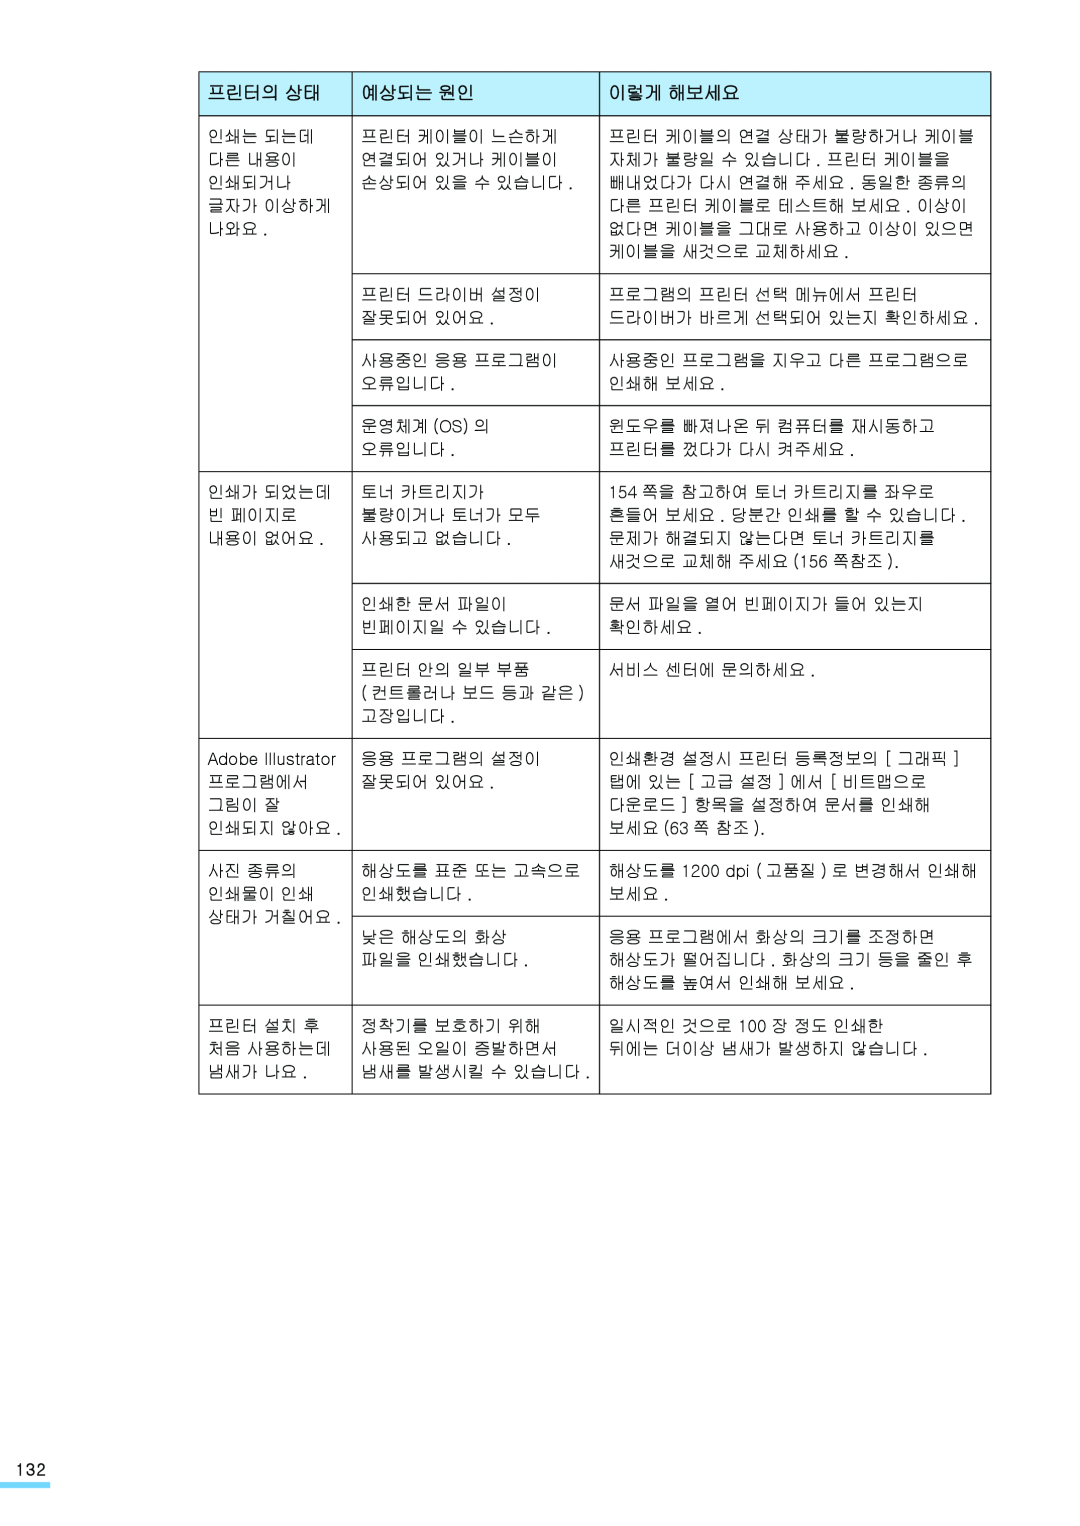 Samsung ML-2571N manual 프린터의 상태, 예상되는 원인, 이렇게 해보세요 